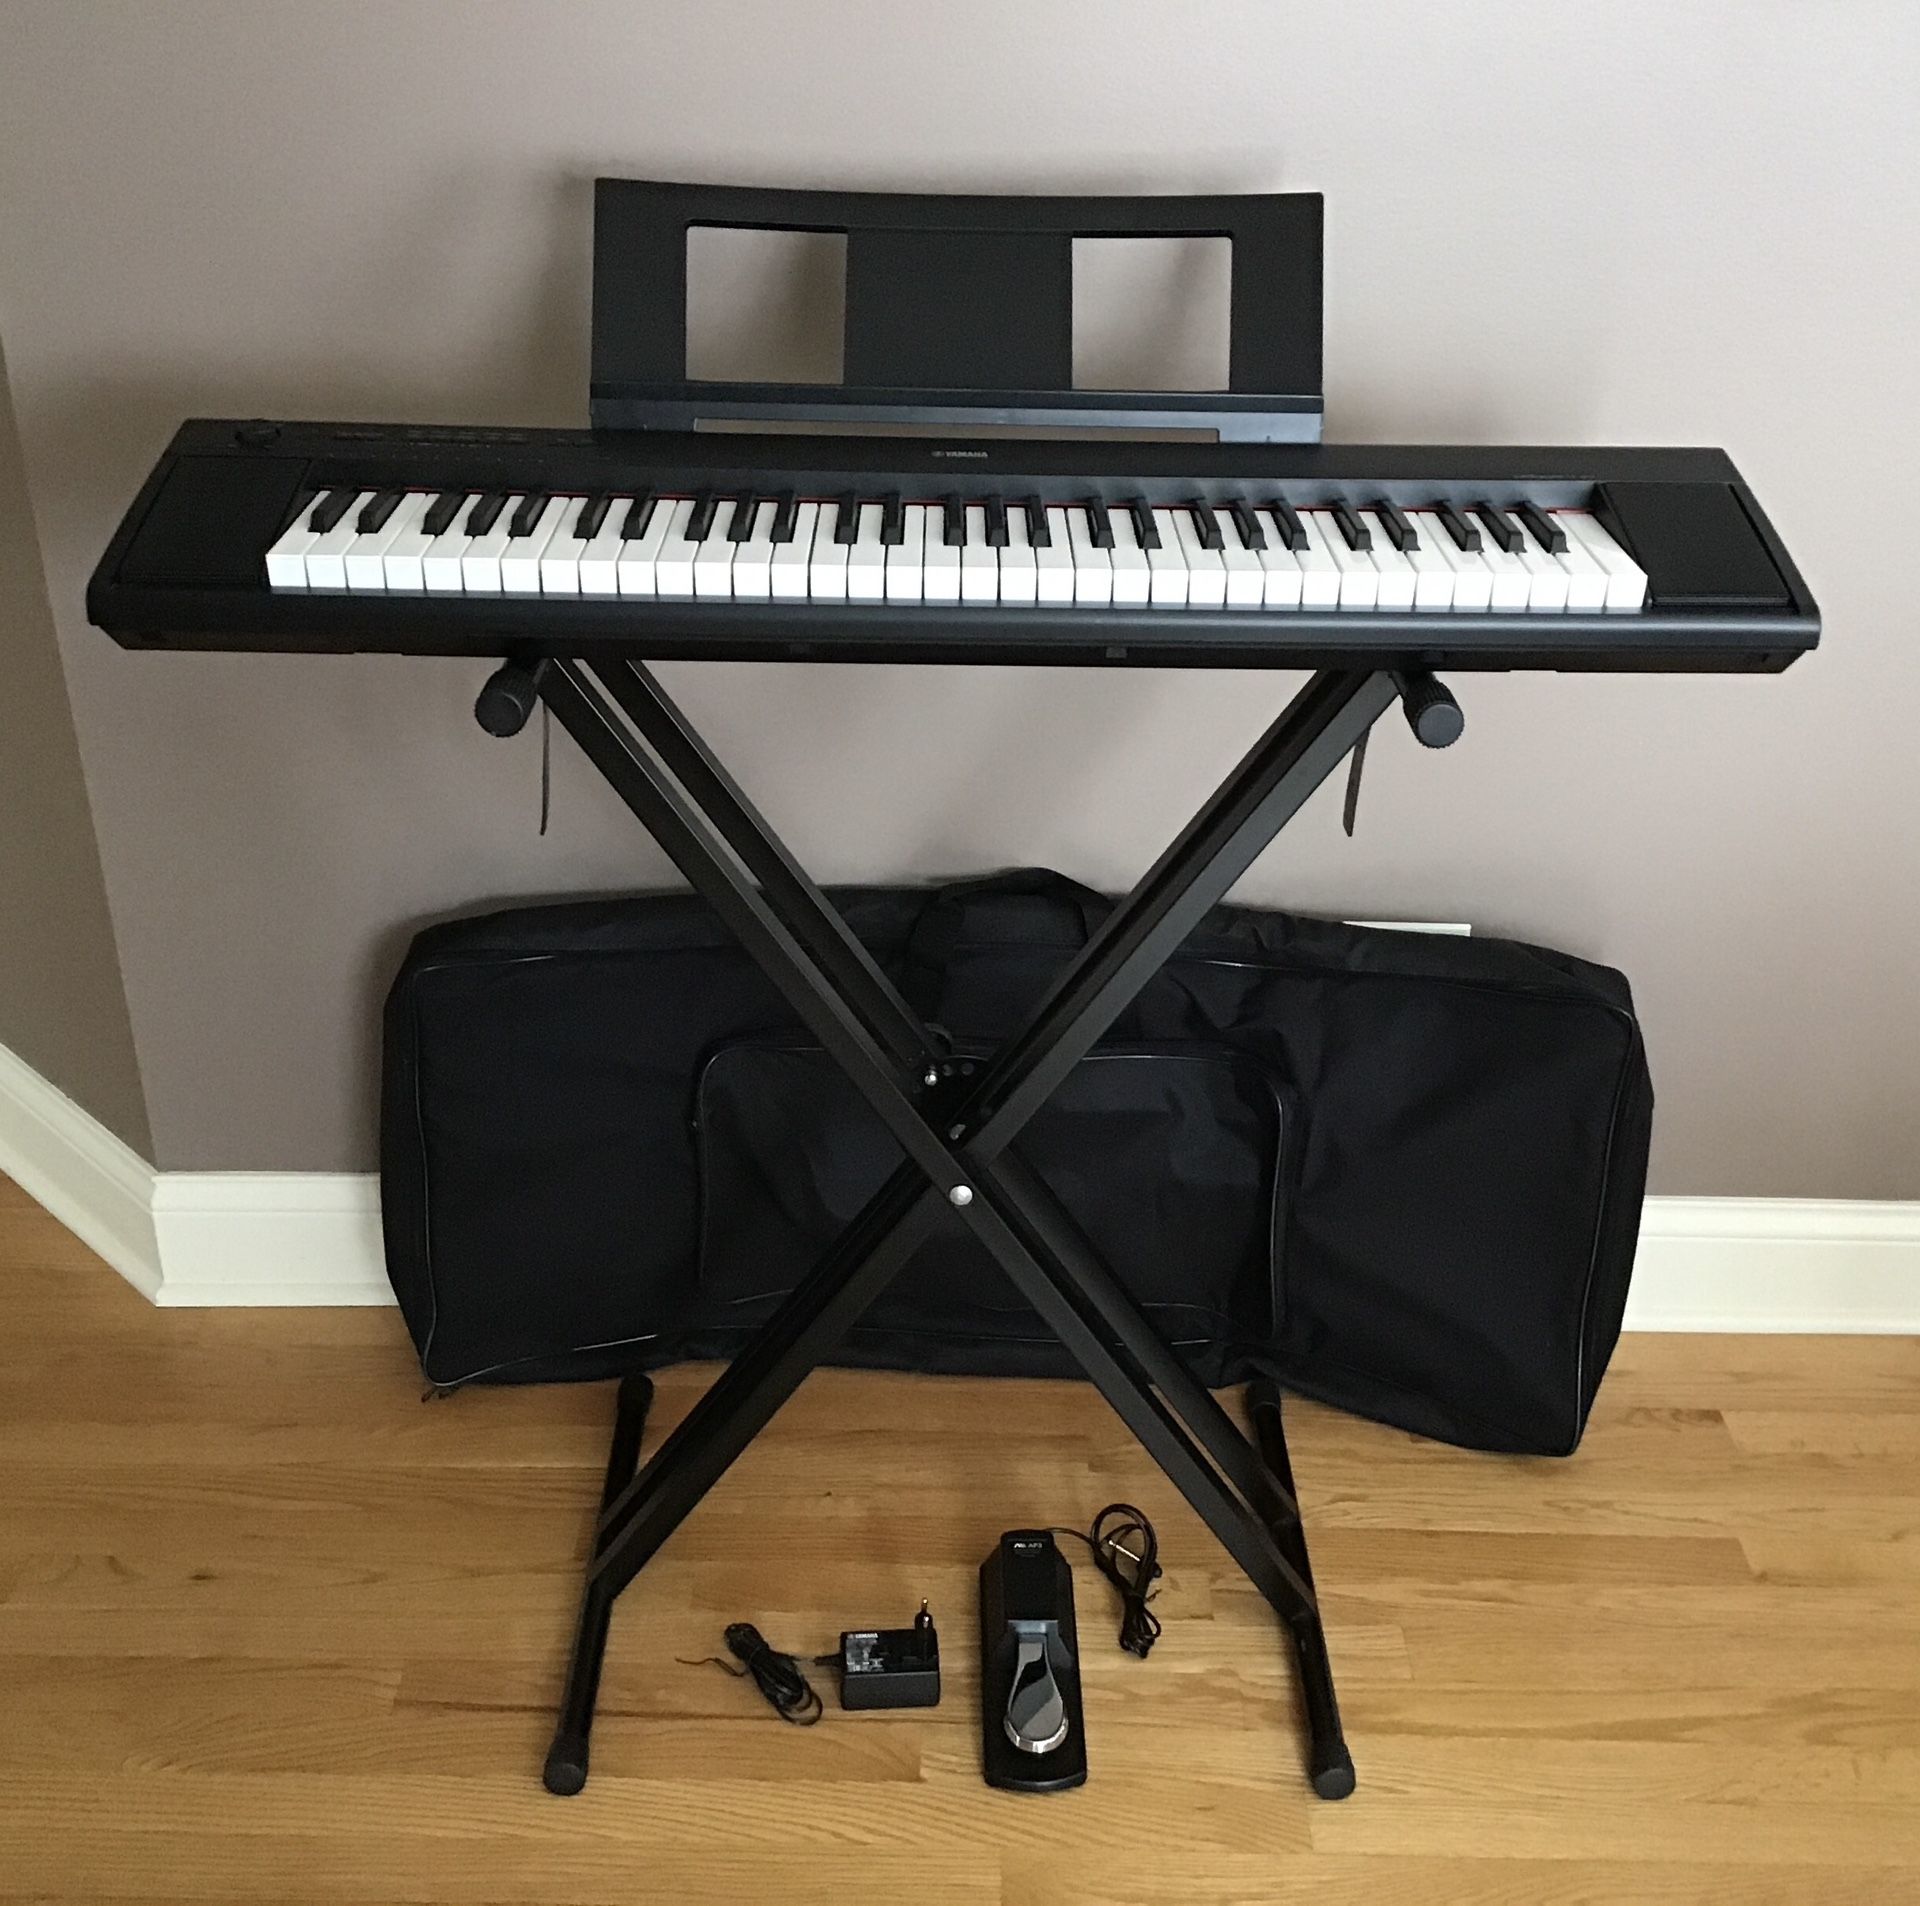 Yahama Piaggero NP-12 Keyboard Digital Piano 61-Key Black + Stand ,Sheet Music stand ,Foot Pedal, Adapter and Bag)